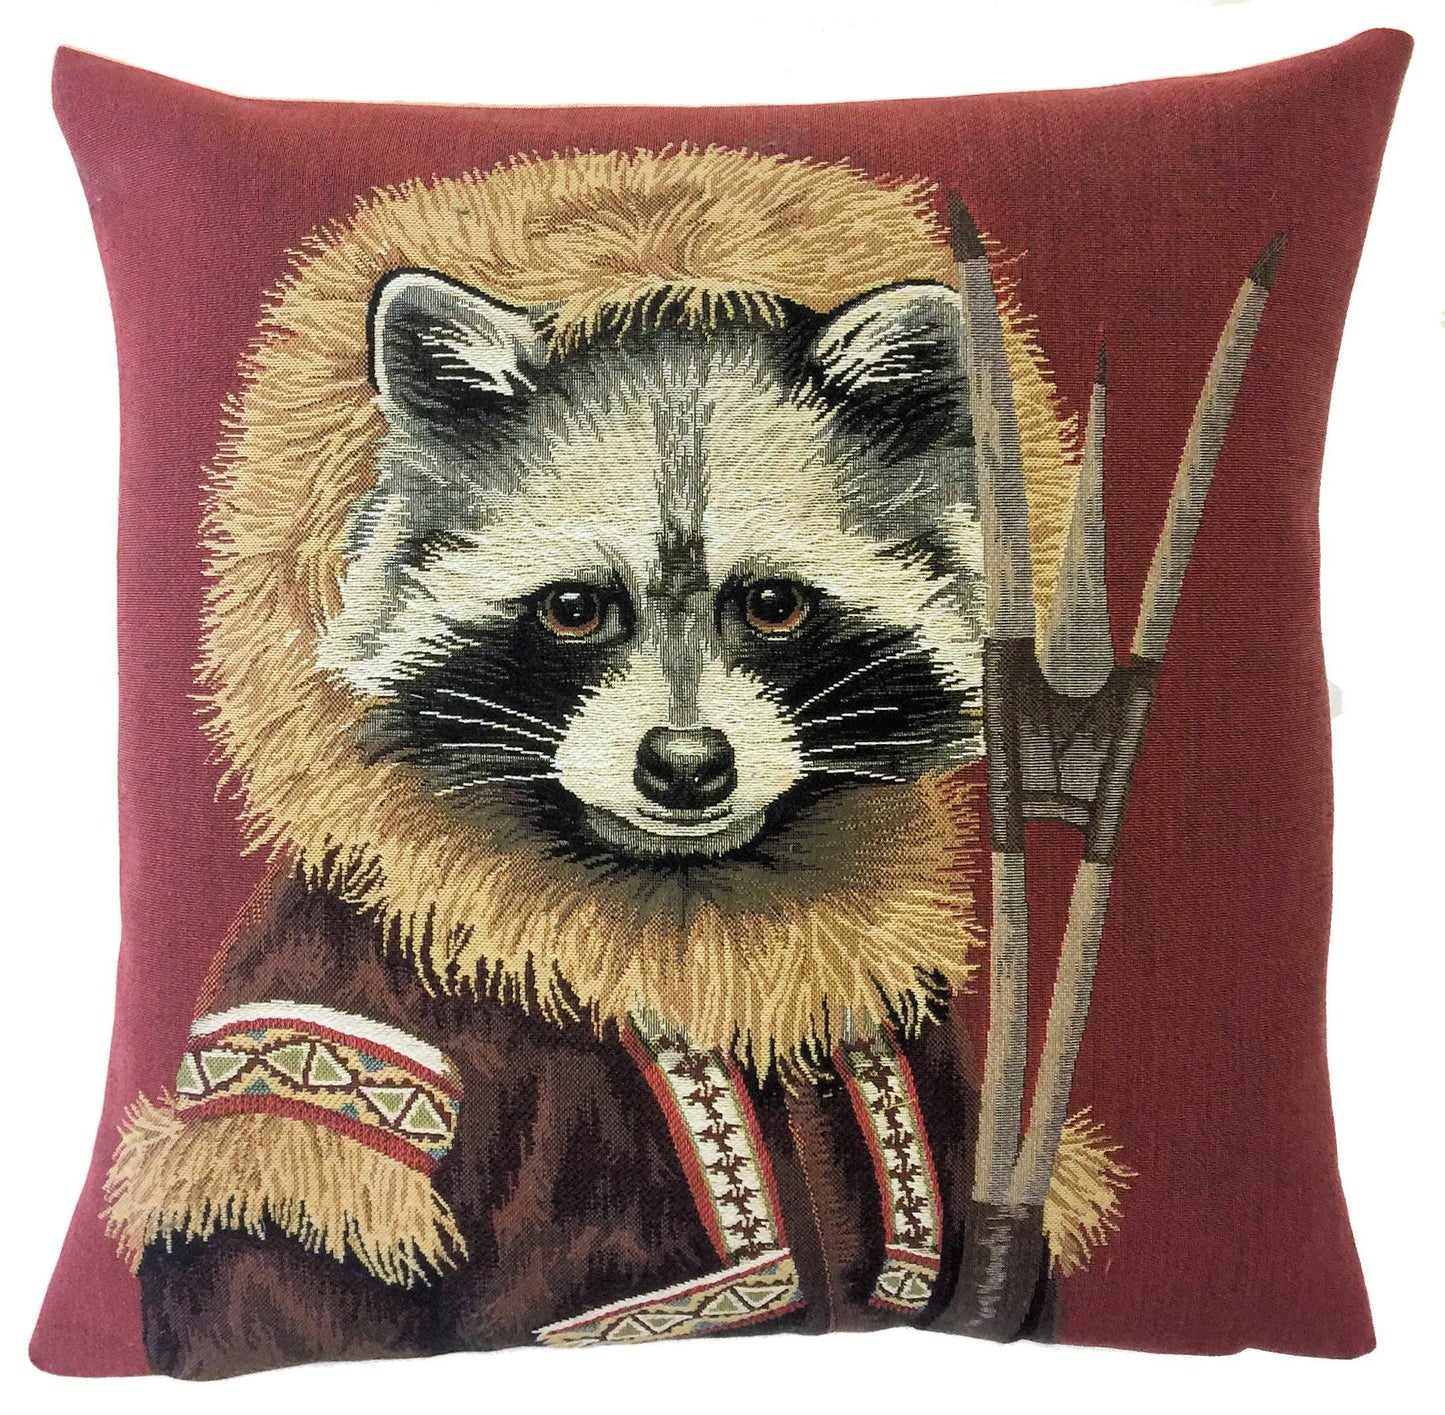 Pillow: Raccoon pillow